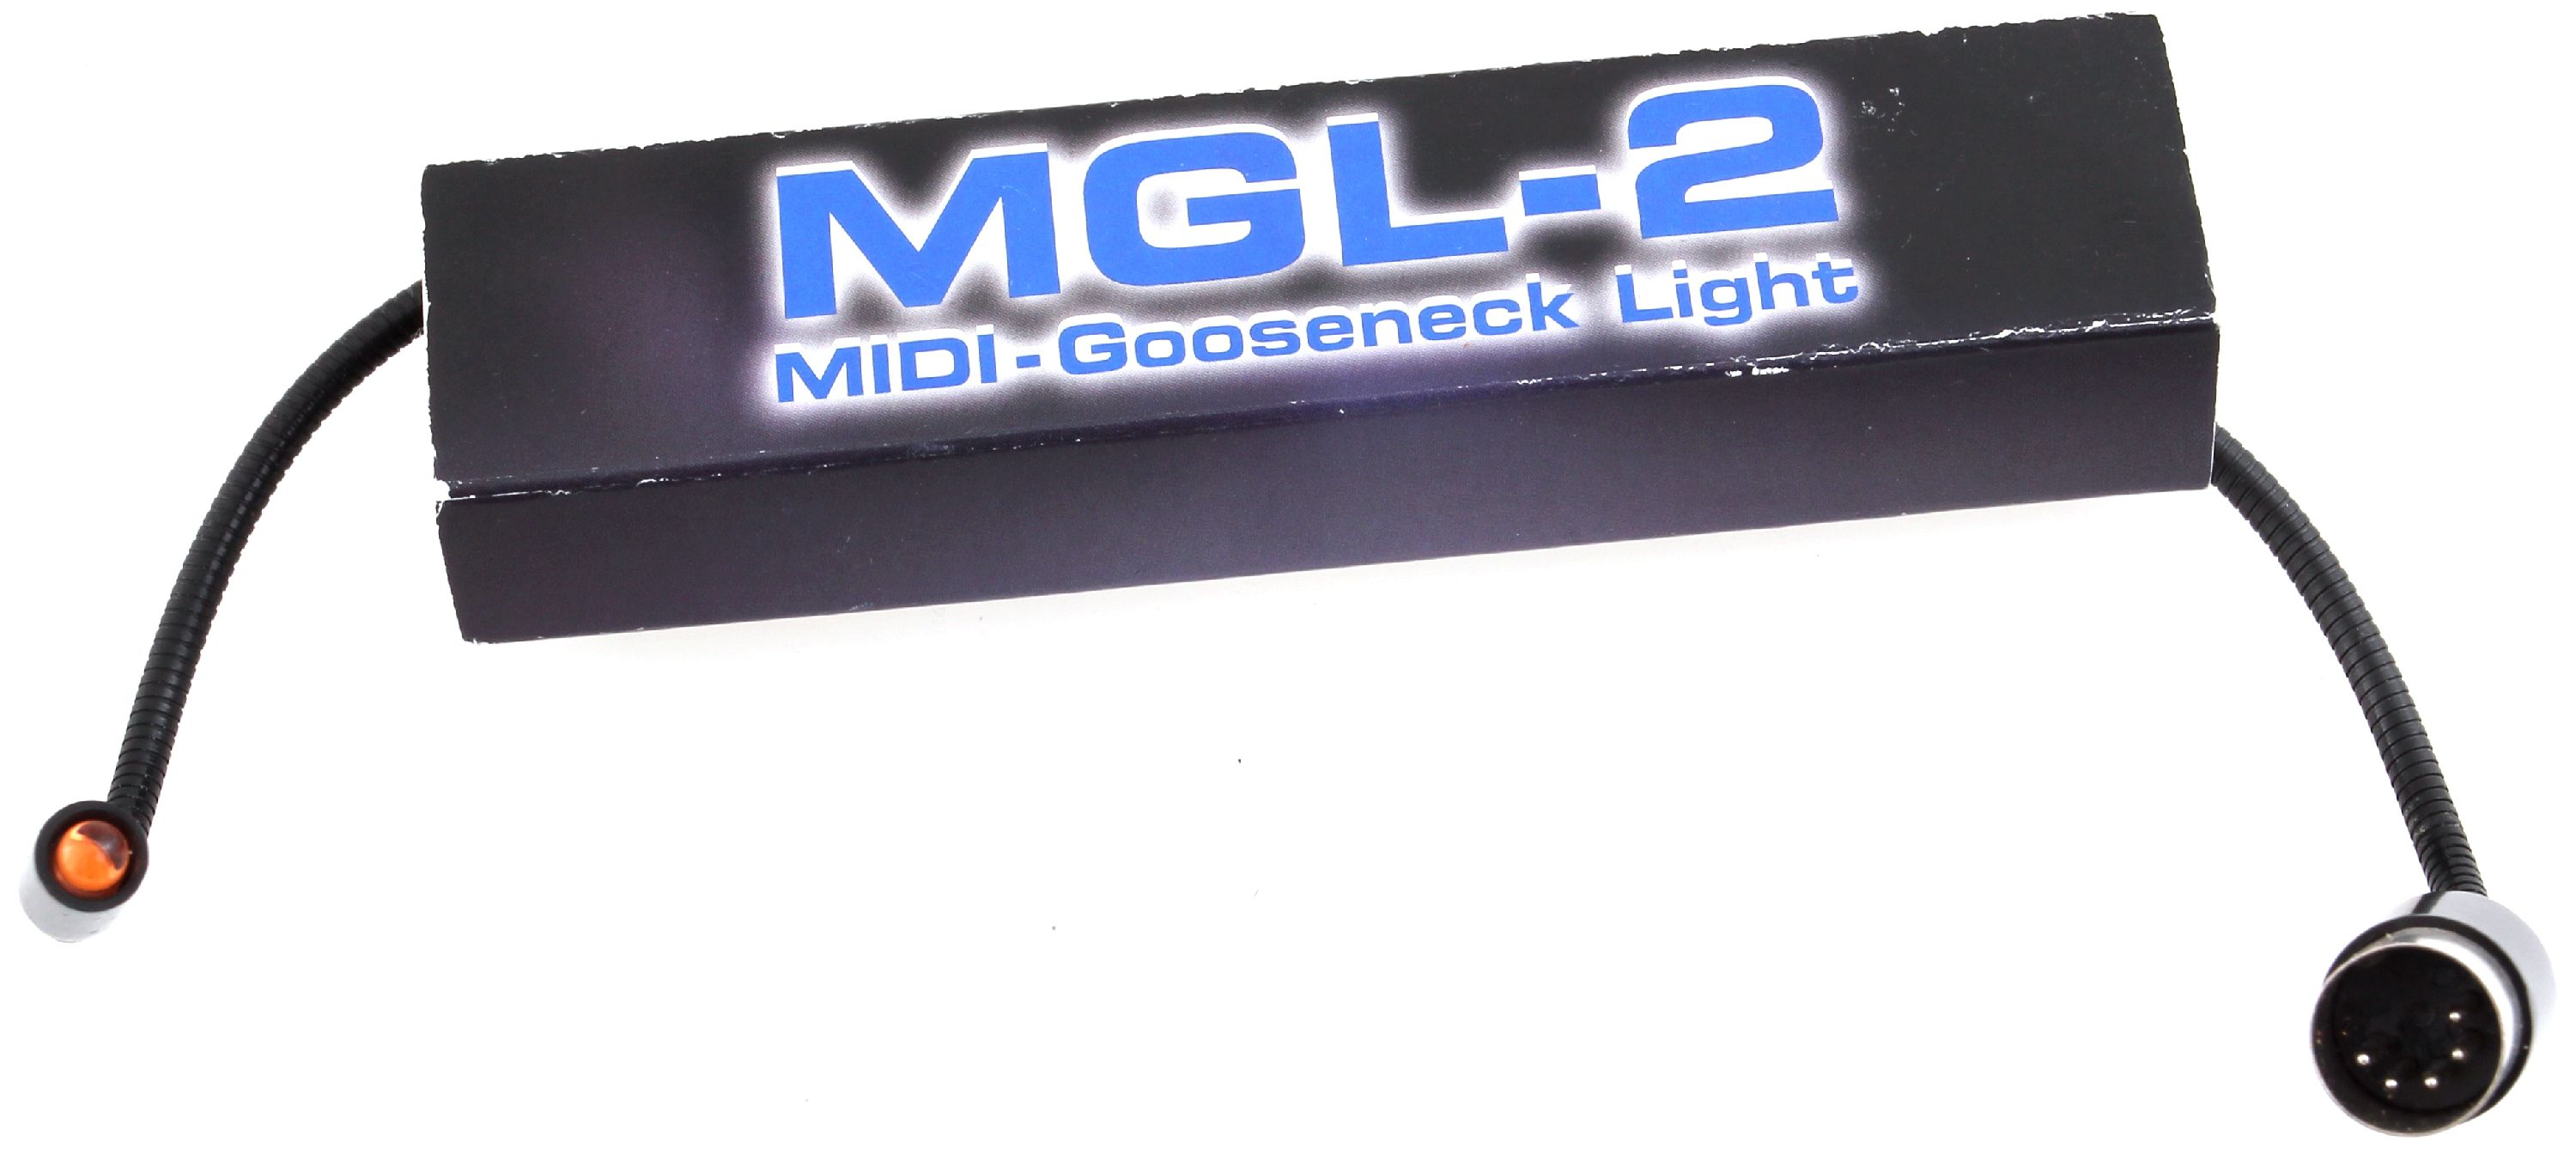 Audio AG MGL-2 LED Midi Lampe